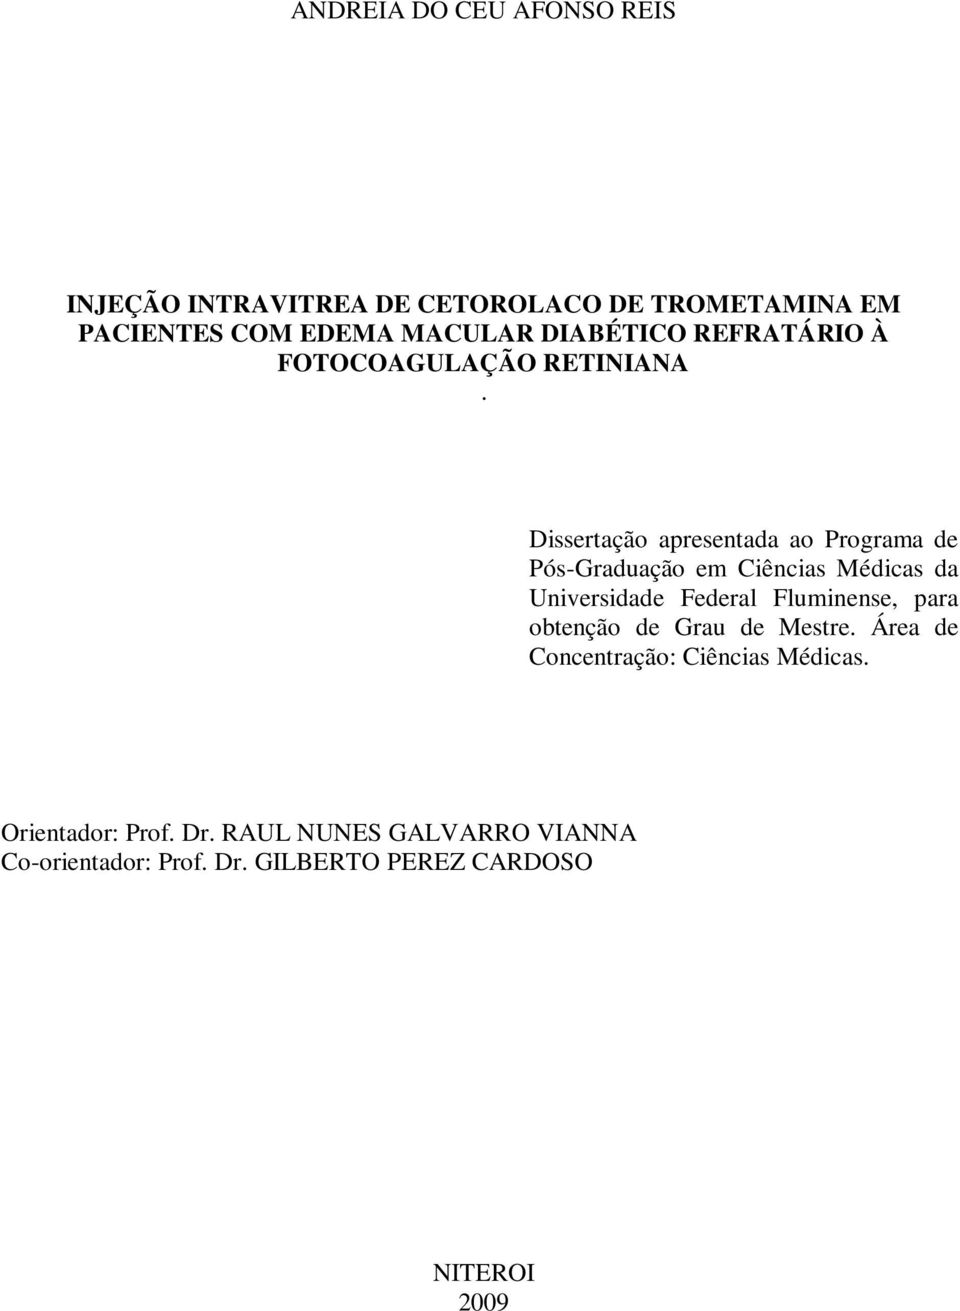 Dissertação apresentada ao Programa de Pós-Graduação em Ciências Médicas da Universidade Federal Fluminense,